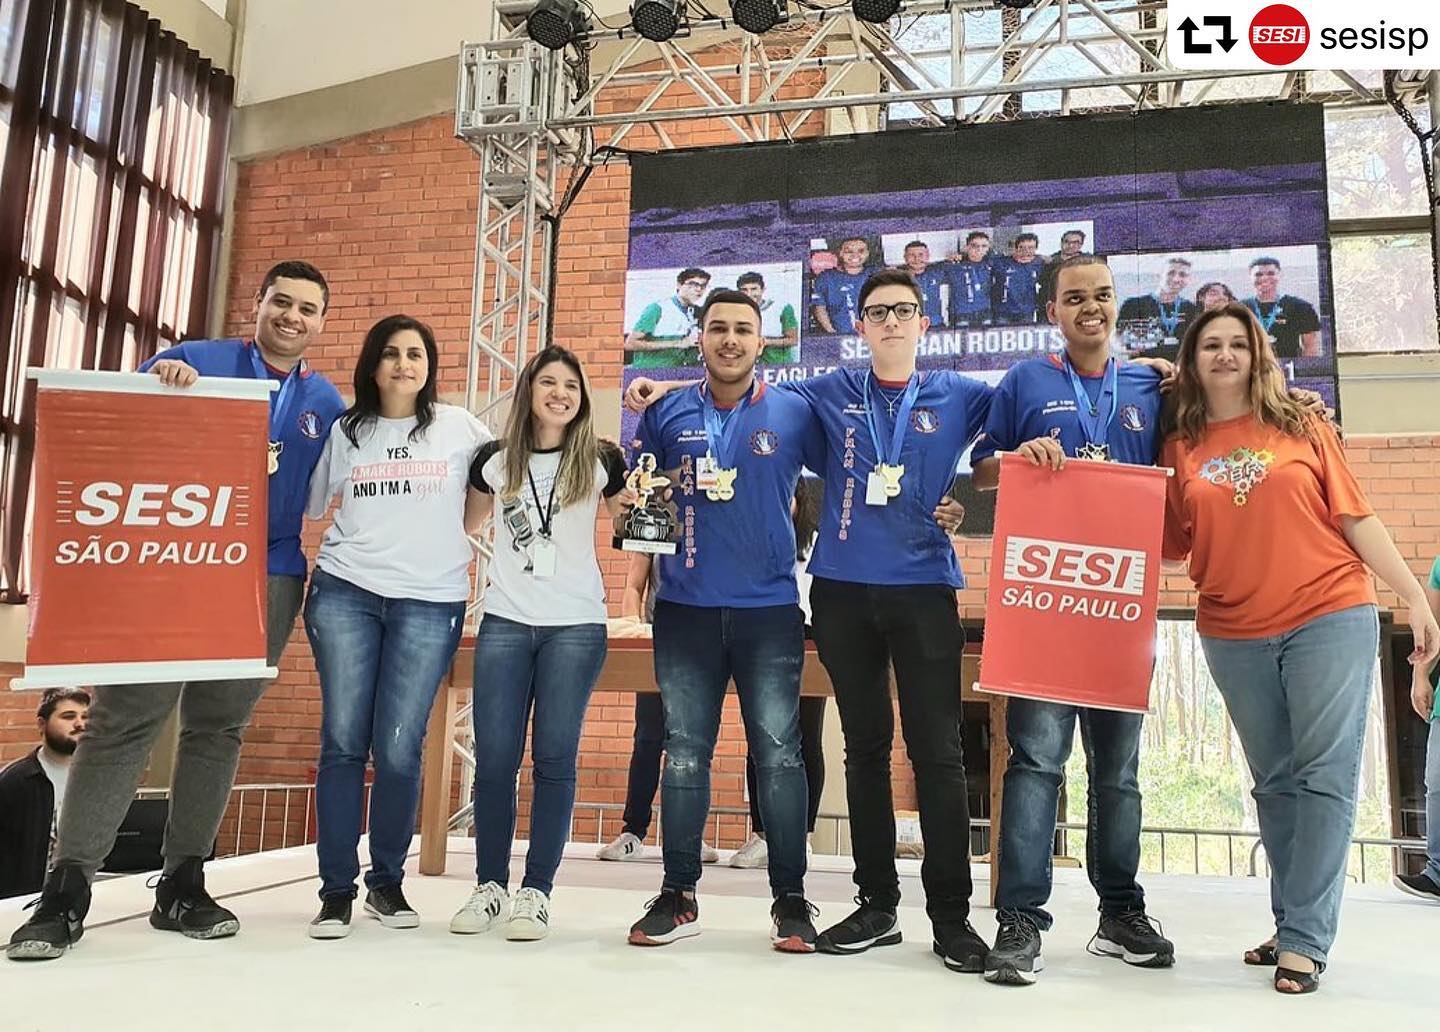 Equipe SESI Fran Robots comemora título de campeã nacional da Olimpíada Brasileira de Robótica 2019 (Foto: Reprodução)